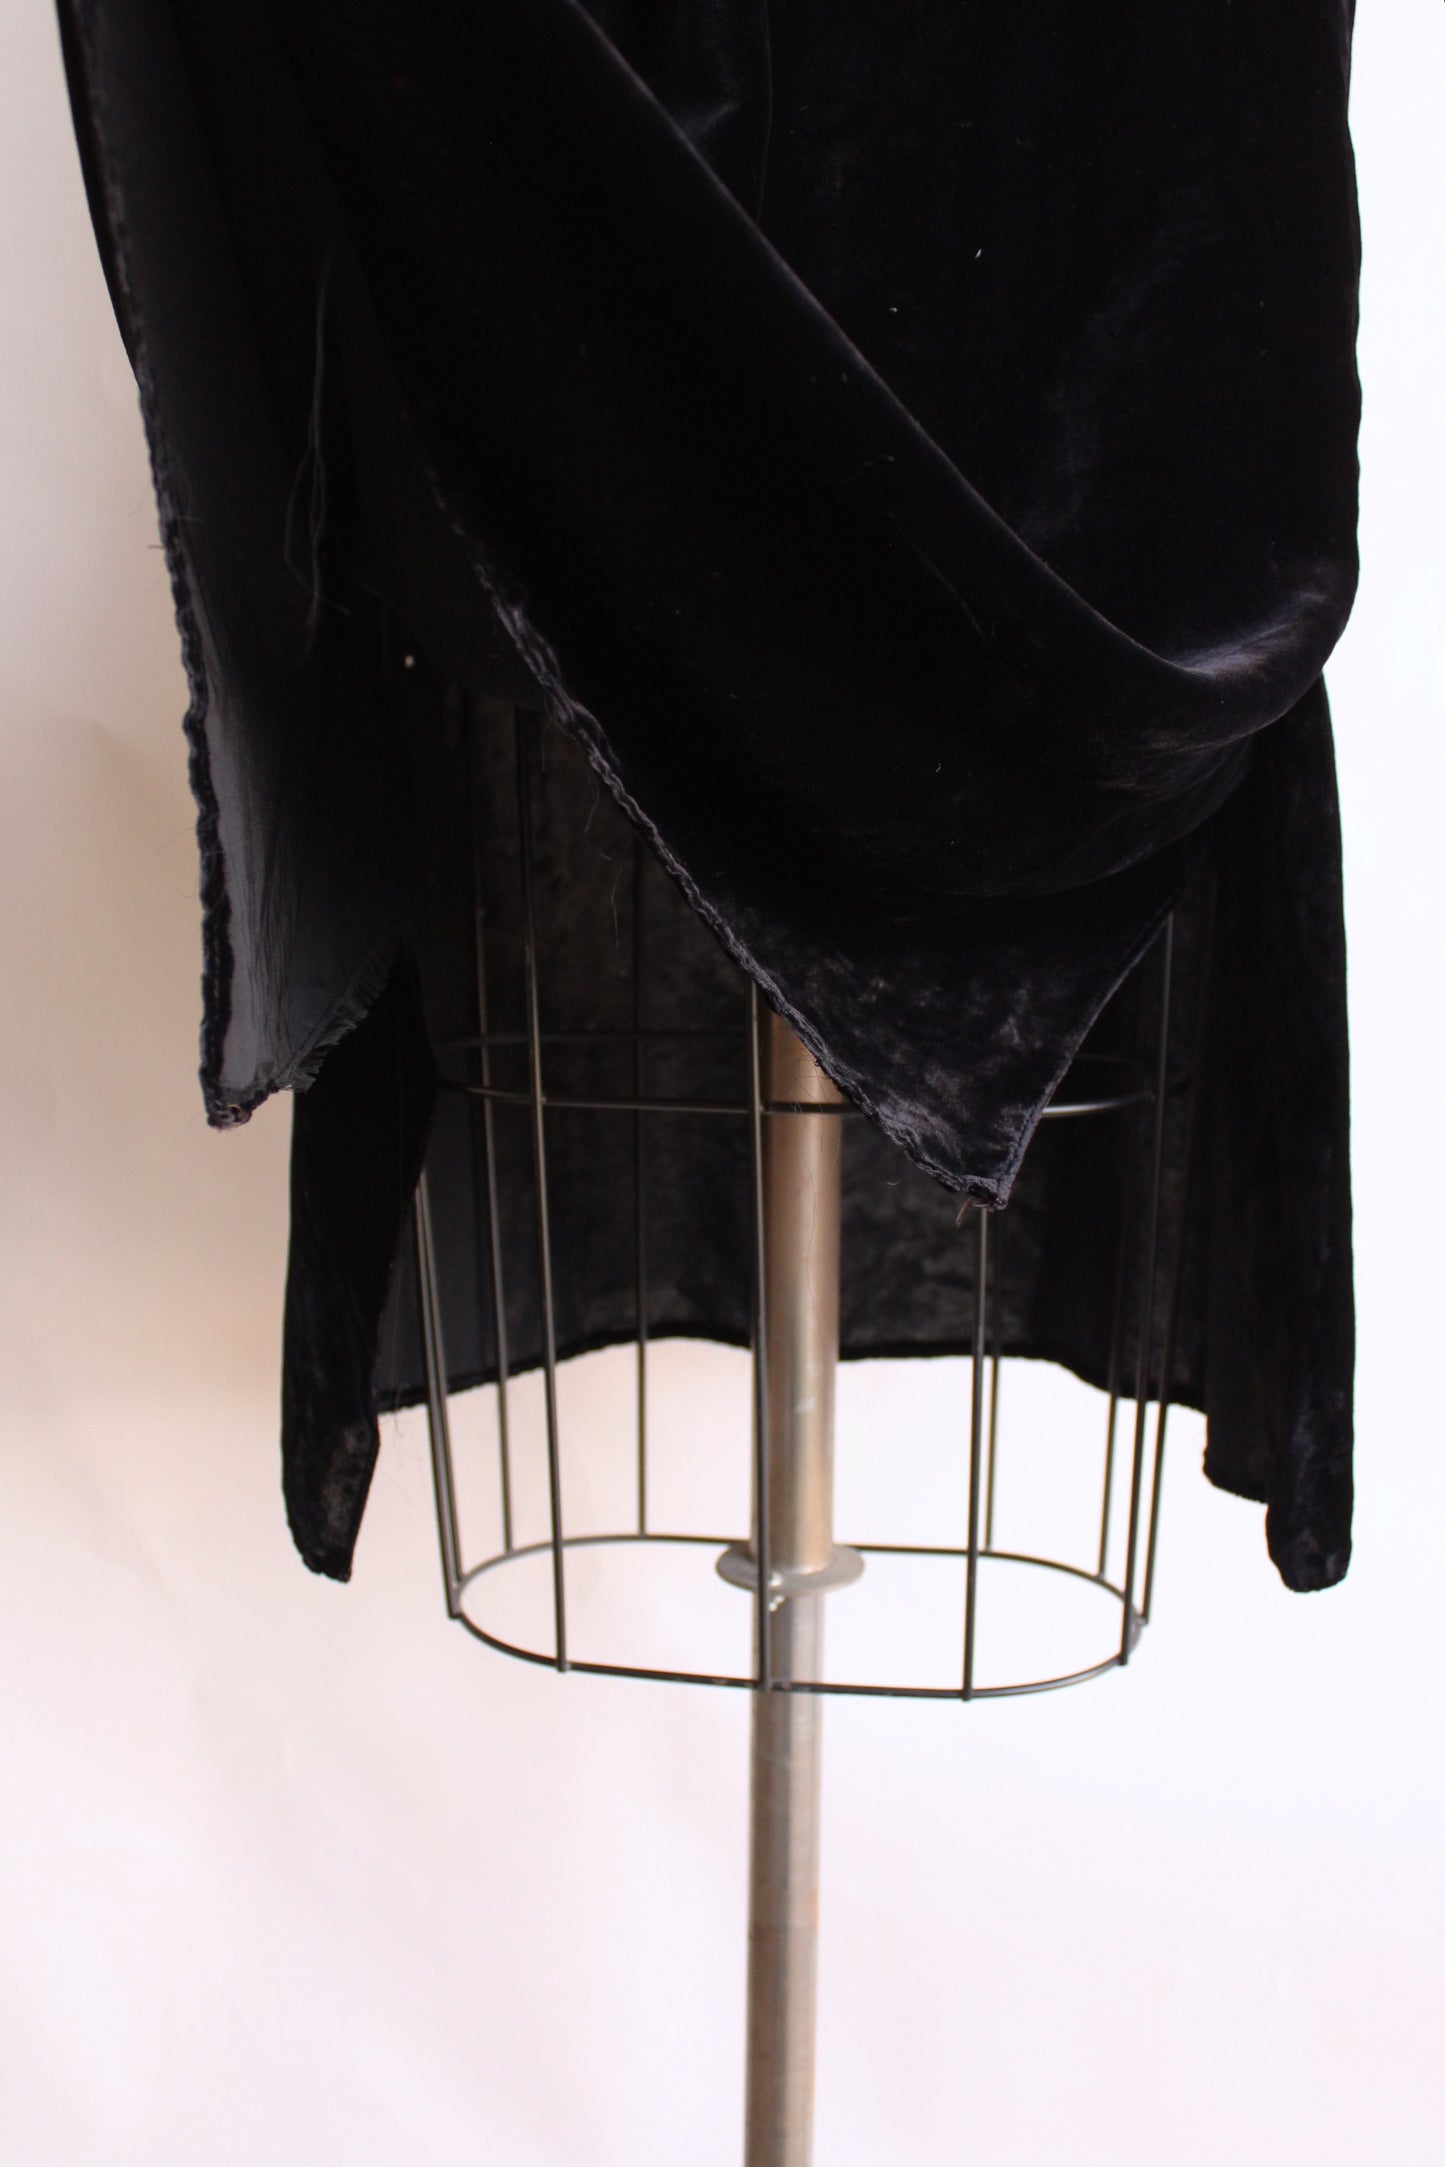 Vintage 1930s Black Silk Velvet Skirt With Side Slits